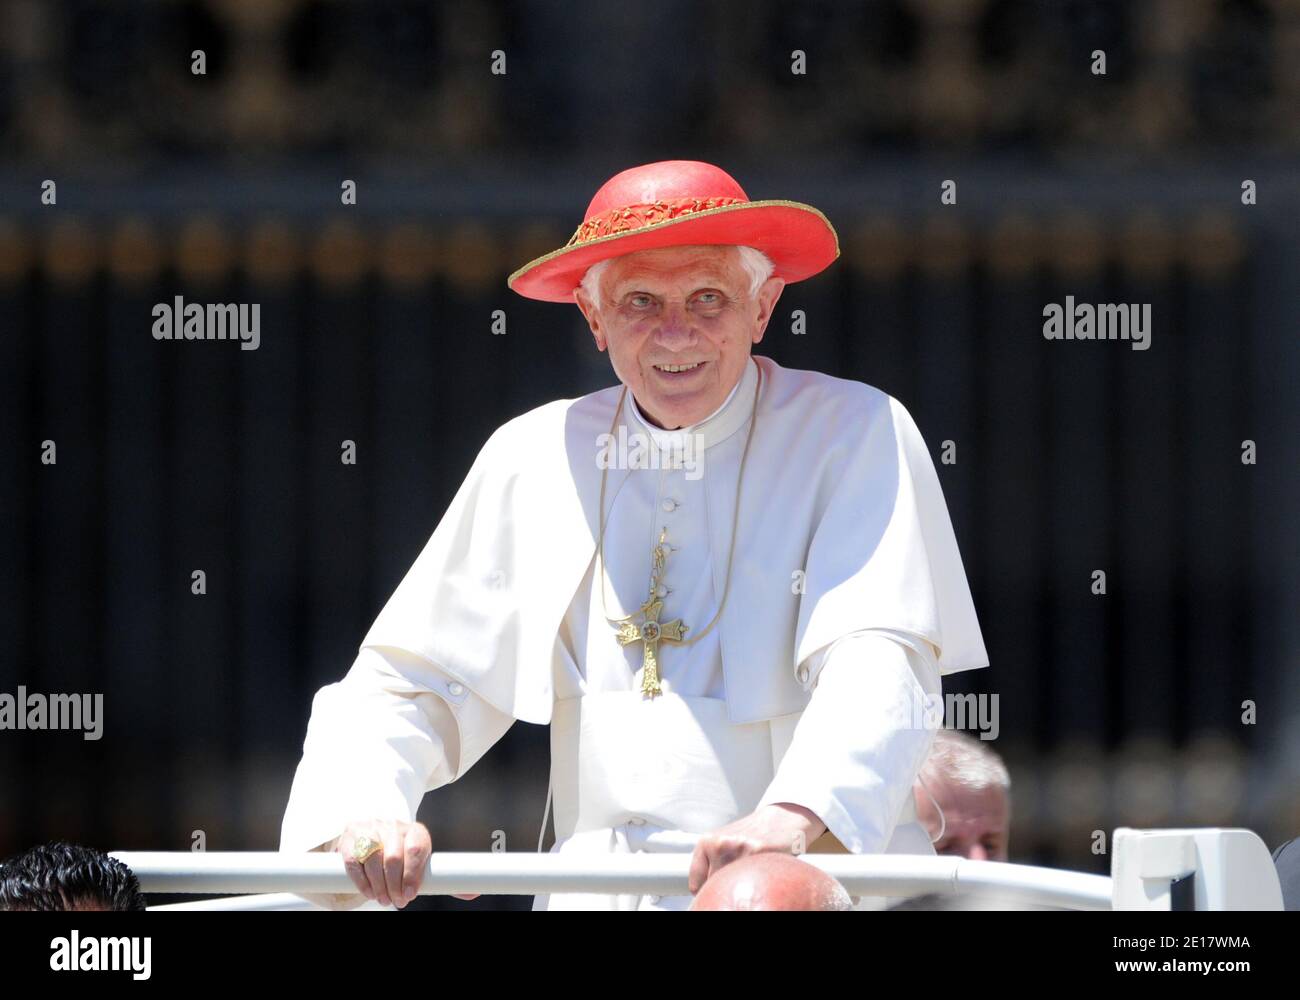 Journée ensoleillée à Rome : le Pape Benoît XVI porte son chapeau rouge  Saturne, nommé d'après la planète annelée Saturne, à la fin de l'audience  générale hebdomadaire sur la place Saint-Pierre au